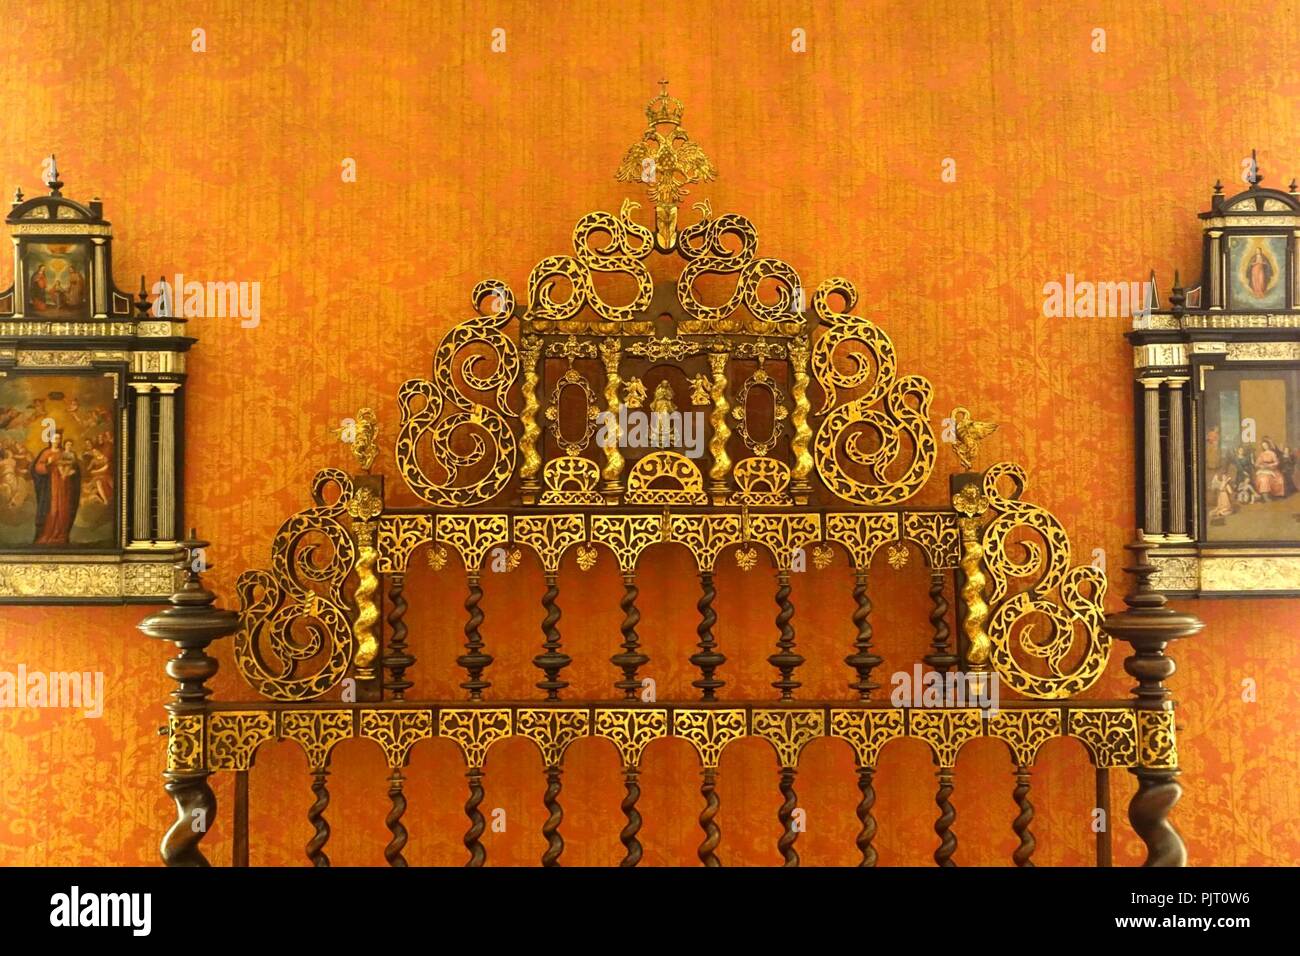 Bett, portugiesischen Stil aus Portugal oder Salamanca, 1650-1700 AD, lignum vitae und Bronze - Museo Nacional de Artes Decorativas - Madrid, Spanien - Stockfoto